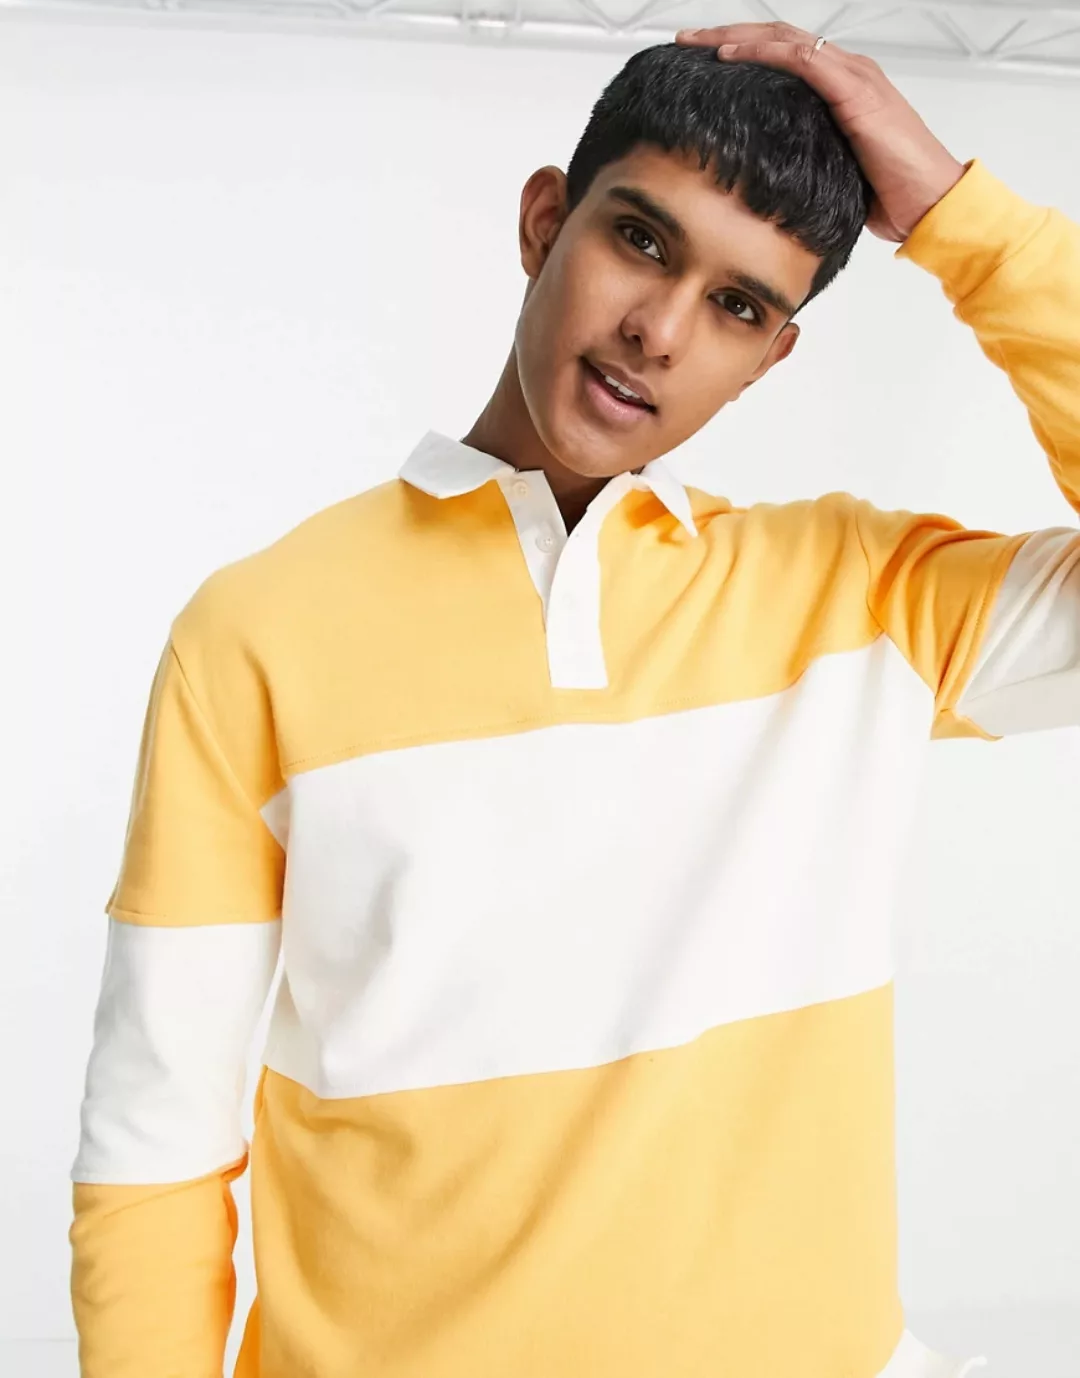 Topman – Rugby-Polohemd in Gelb und Weiß gestreift-Mehrfarbig günstig online kaufen